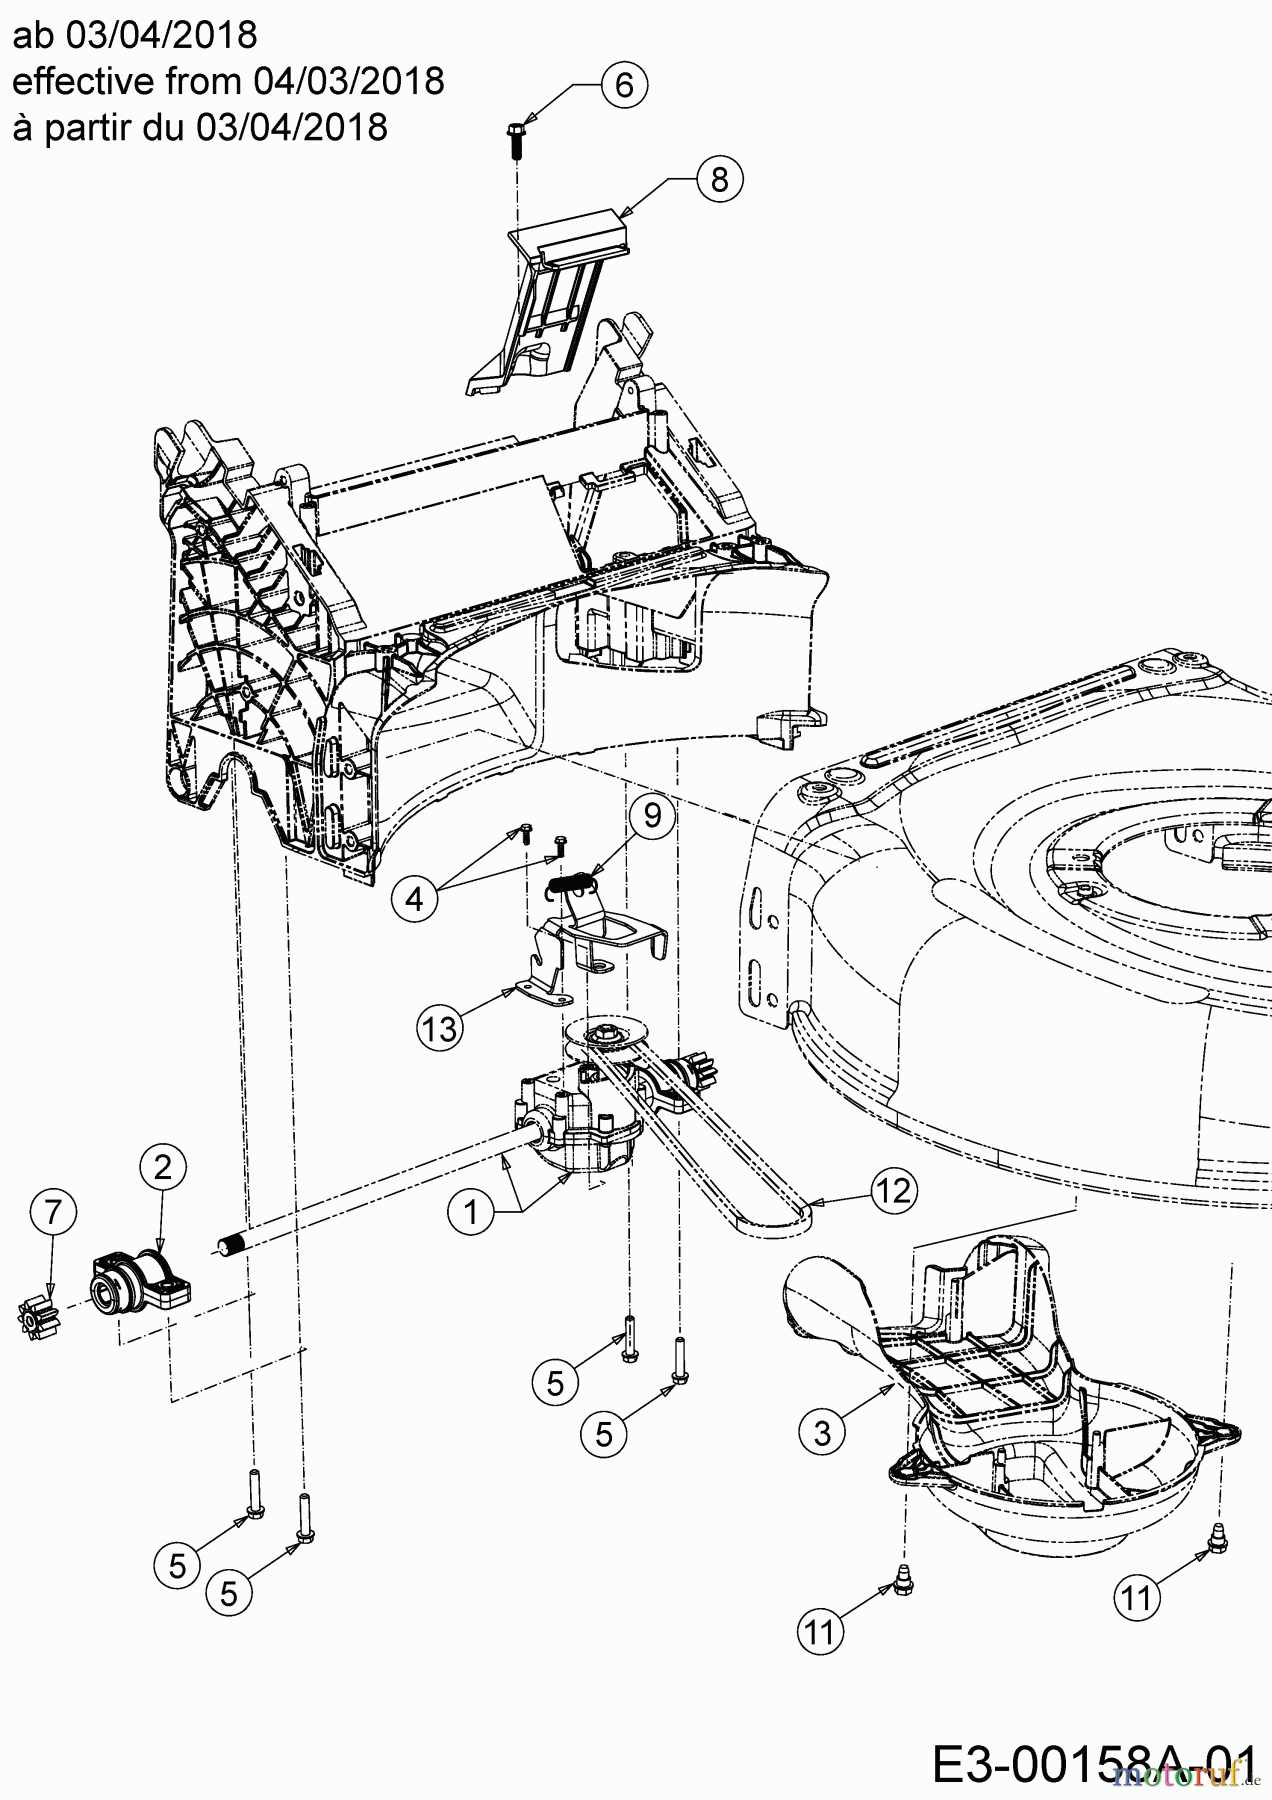  Wolf-Garten Motormäher mit Antrieb AH 4200 H 12A-LV5B650  (2020) Getriebe, Keilriemen ab 03/04/2018